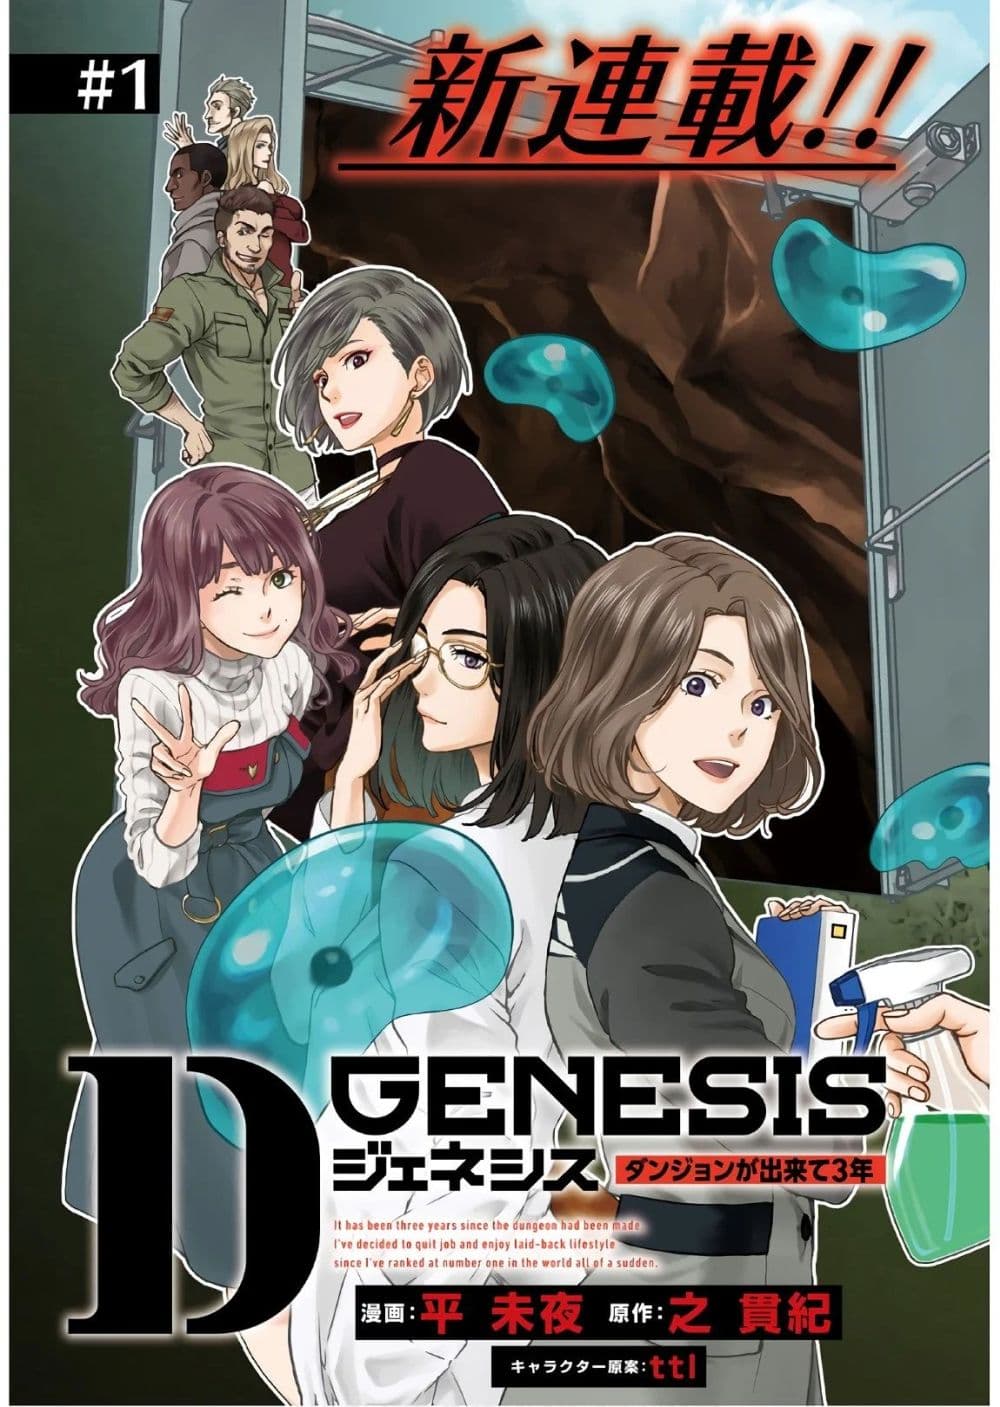 D Genesis Dungeon ga Dekite 3 nen ตอนที่ 1 (3)